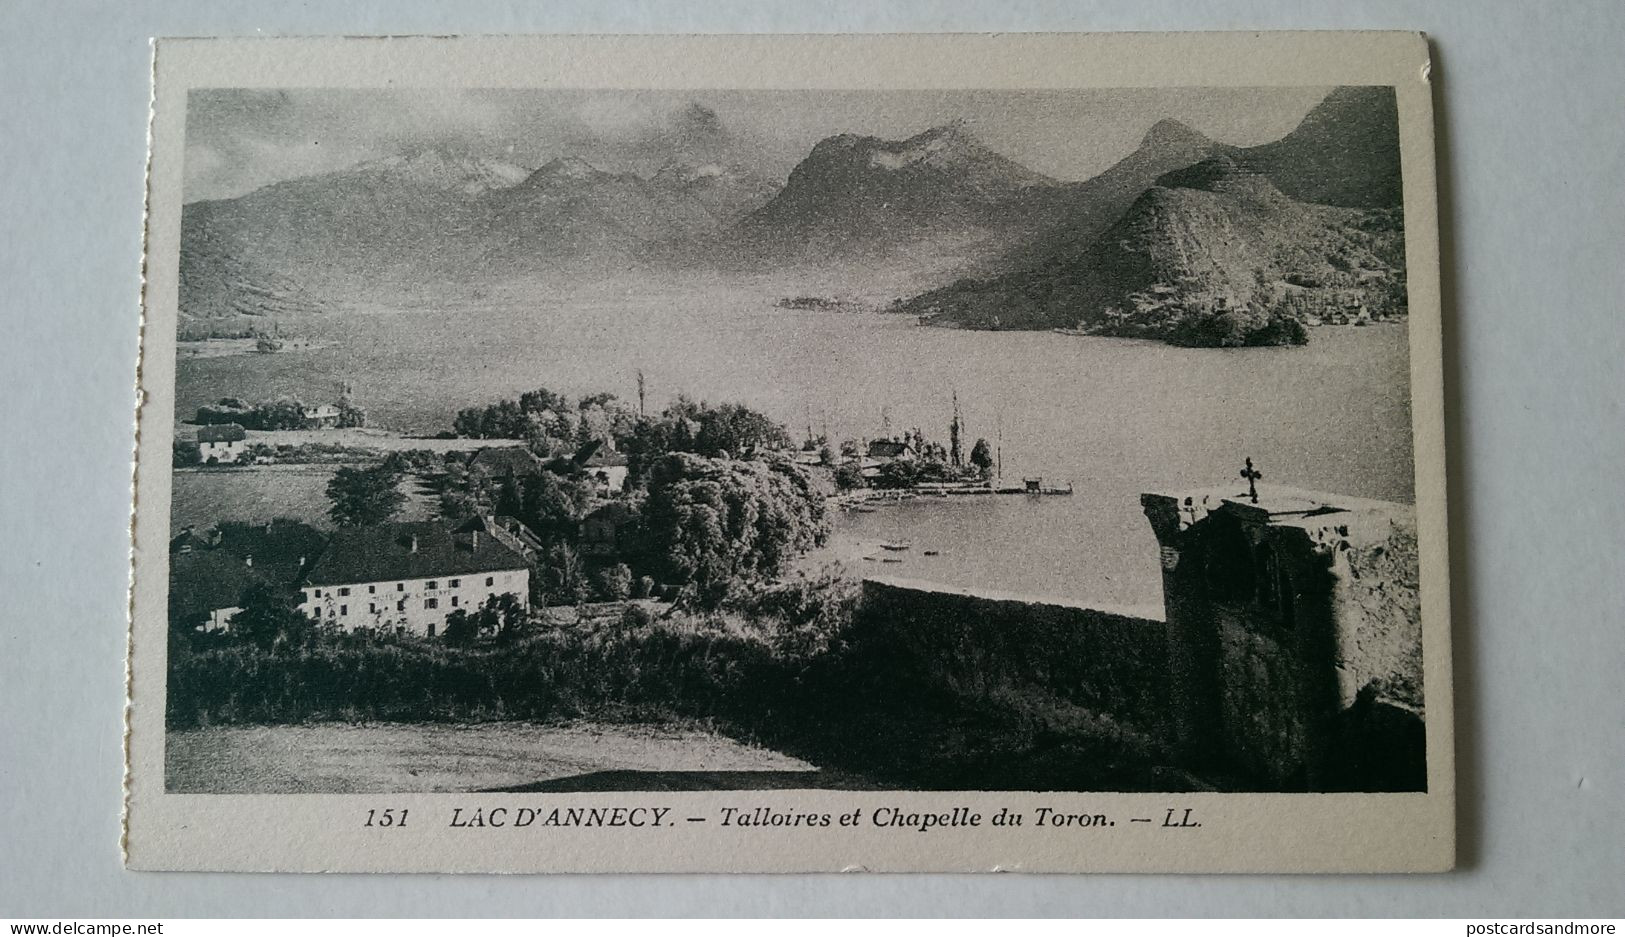 France Annecy Lot of 20 unused postcards Lévy et Neurdein Réunis ca. 1925